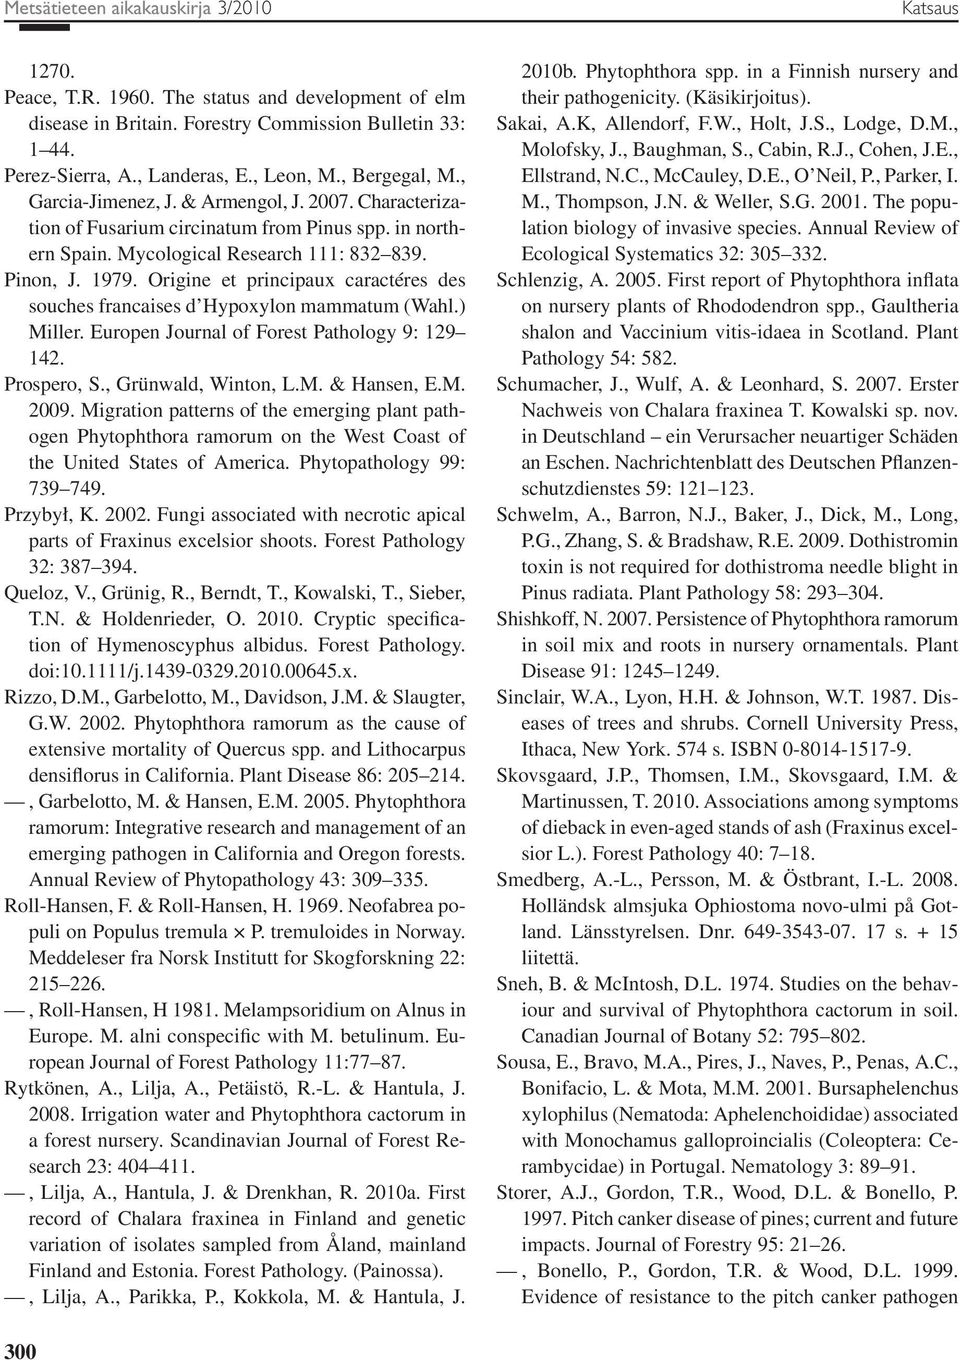 Origine et principaux caractéres des souches francaises d Hypoxylon mammatum (Wahl.) Miller. Europen Journal of Forest Pathology 9: 129 142. Prospero, S., Grünwald, Winton, L.M. & Hansen, E.M. 2009.